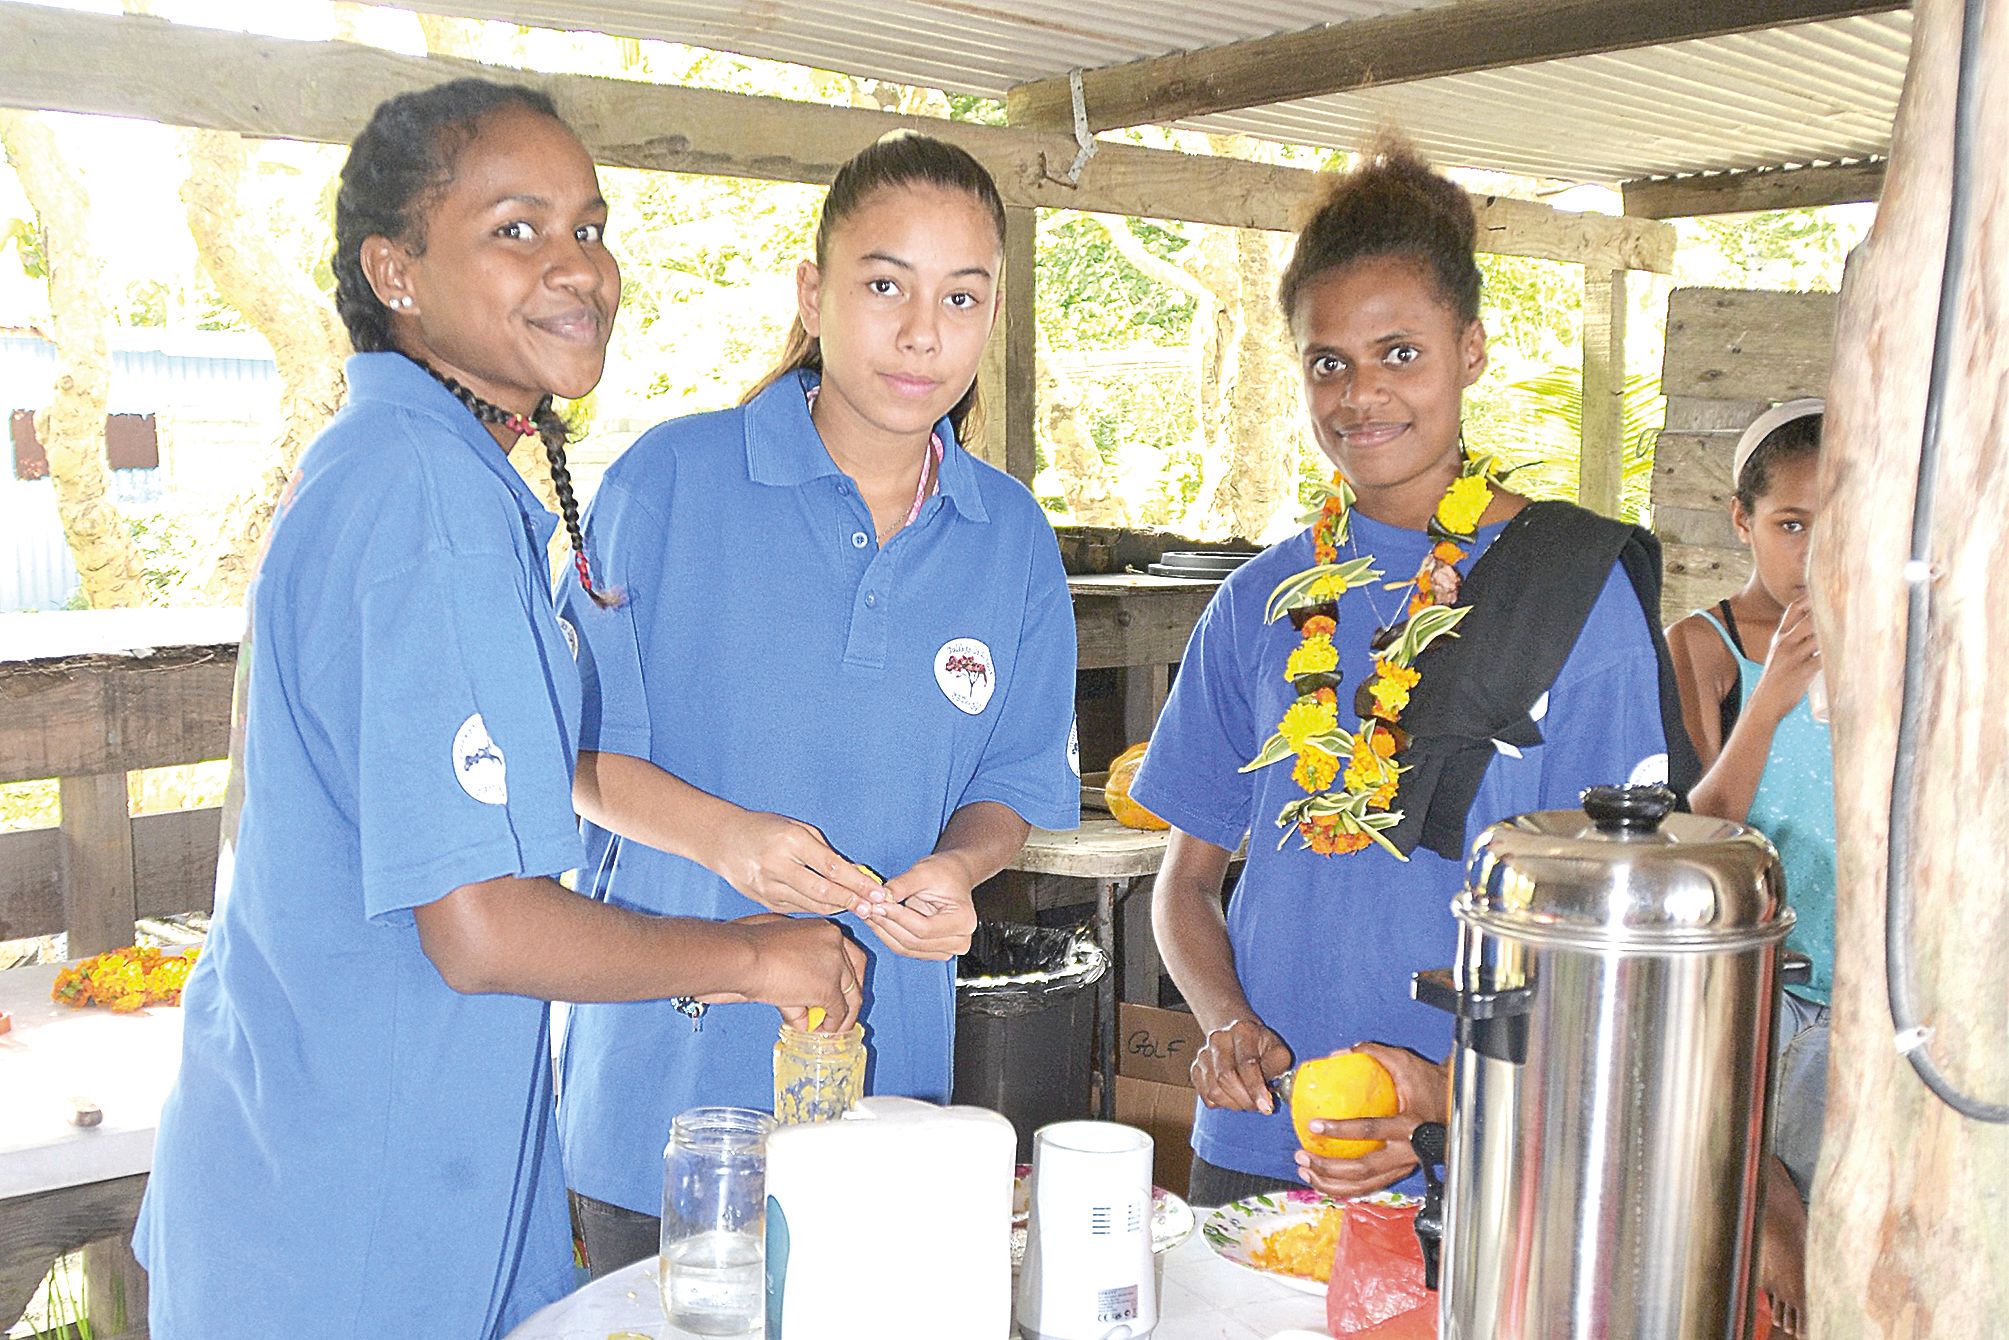 Des élèves de troisième du collège de La Roche en pleine préparation de jus de fruits maison.